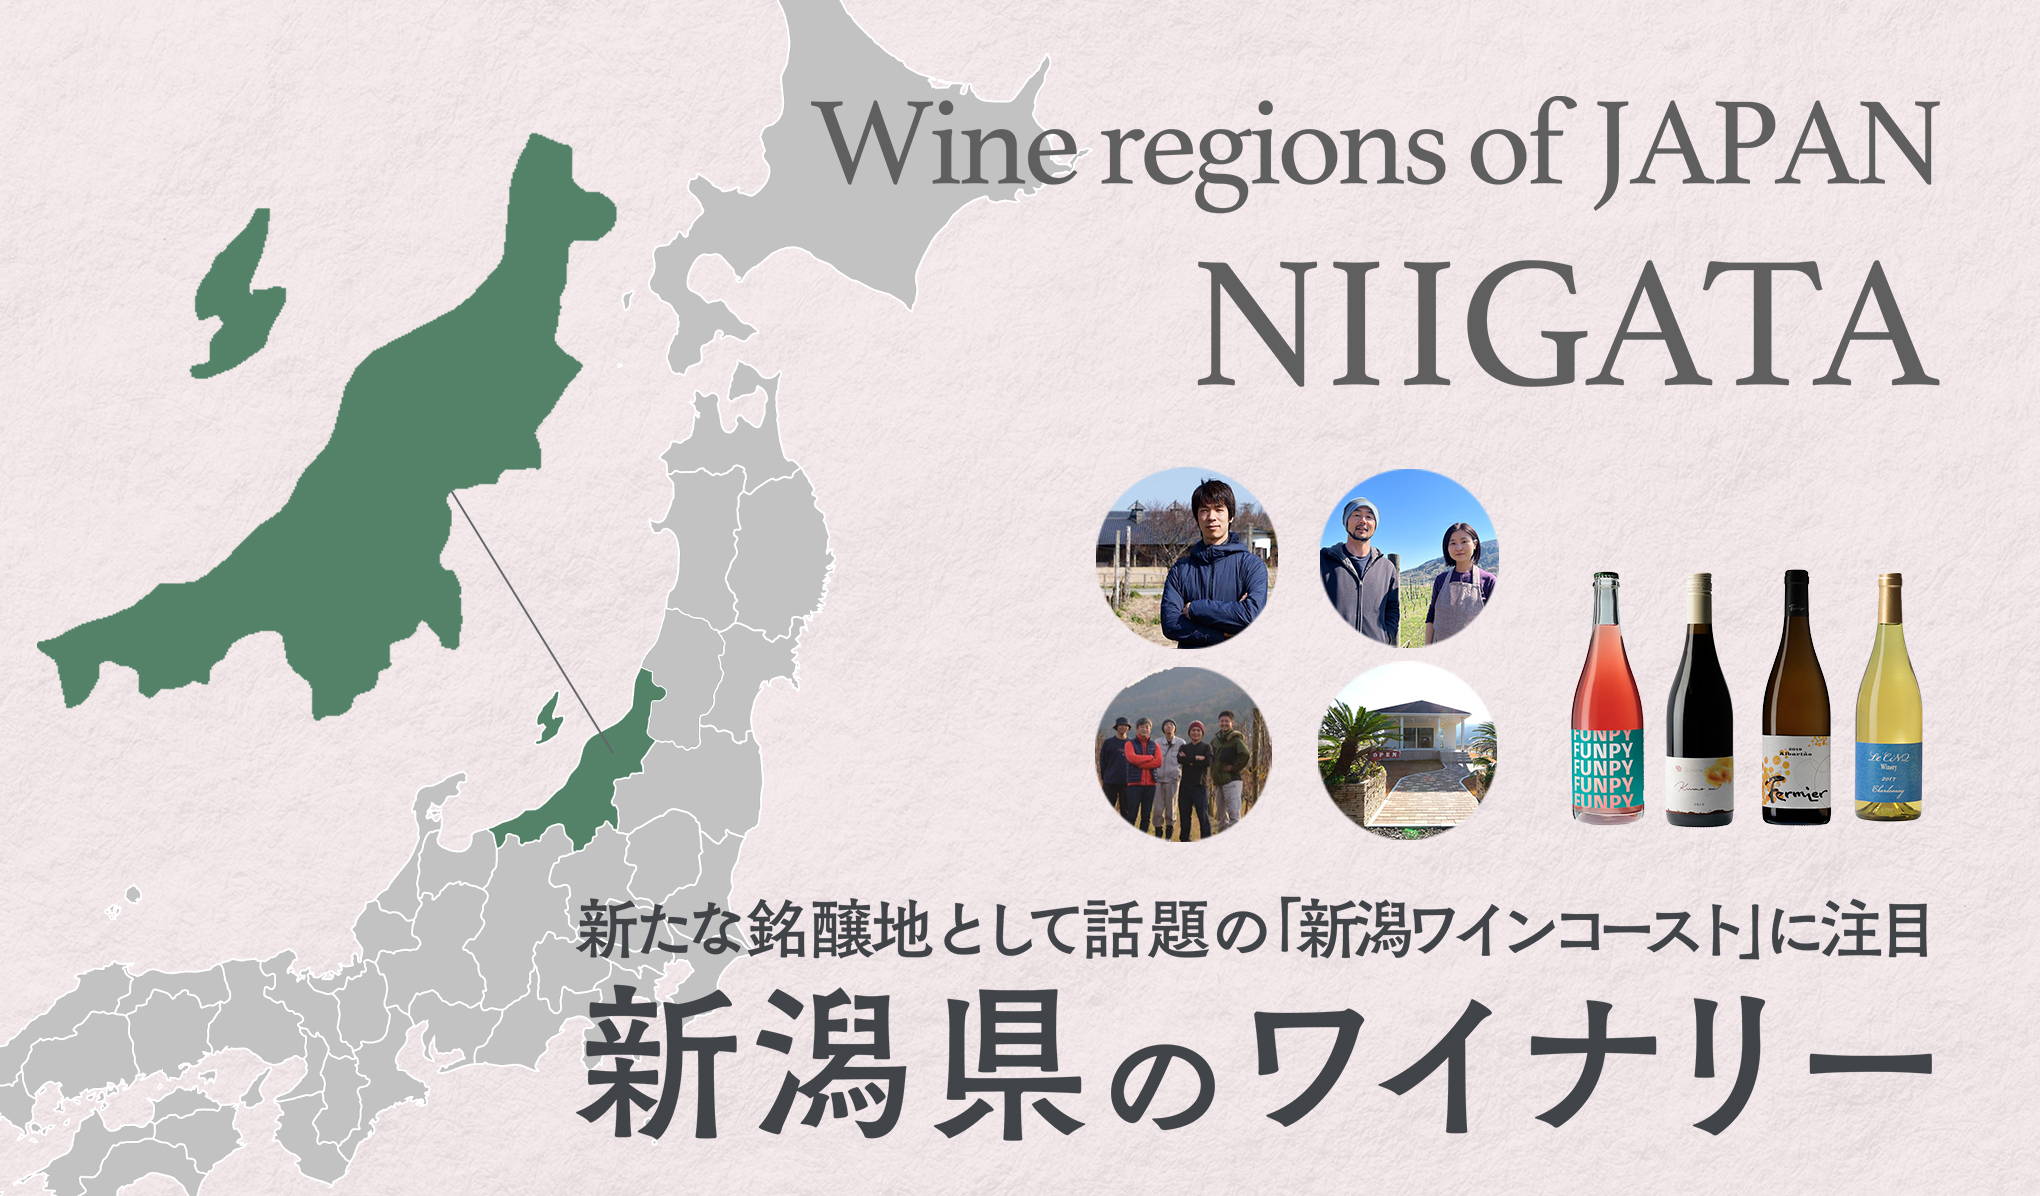 新たな銘醸地として話題の「新潟ワインコースト」に注目。新潟県のワイナリー